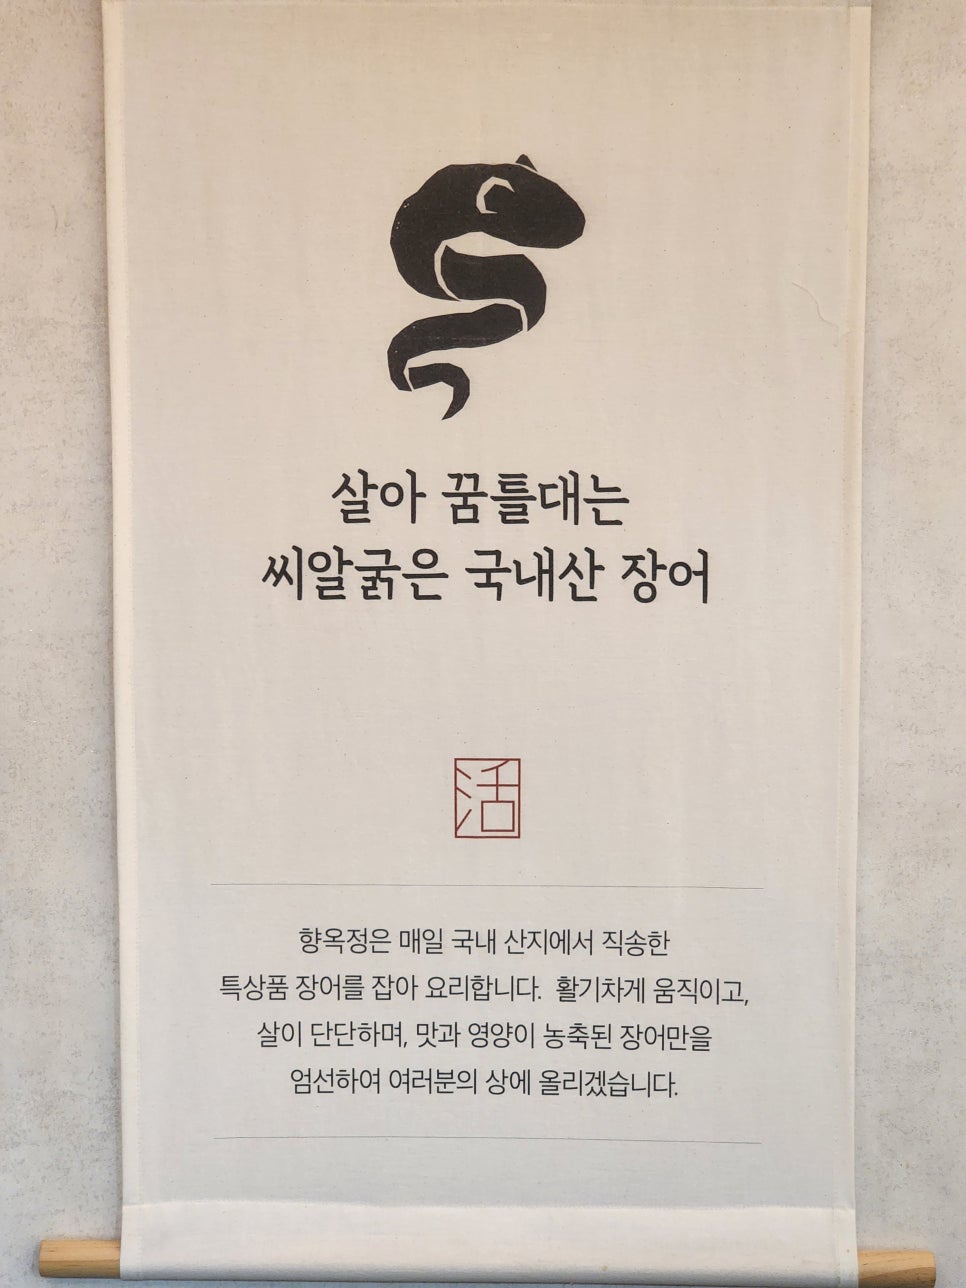 김해 민물장어 맛집 백년가게 향옥정, 회장님들의 보양식 밥집